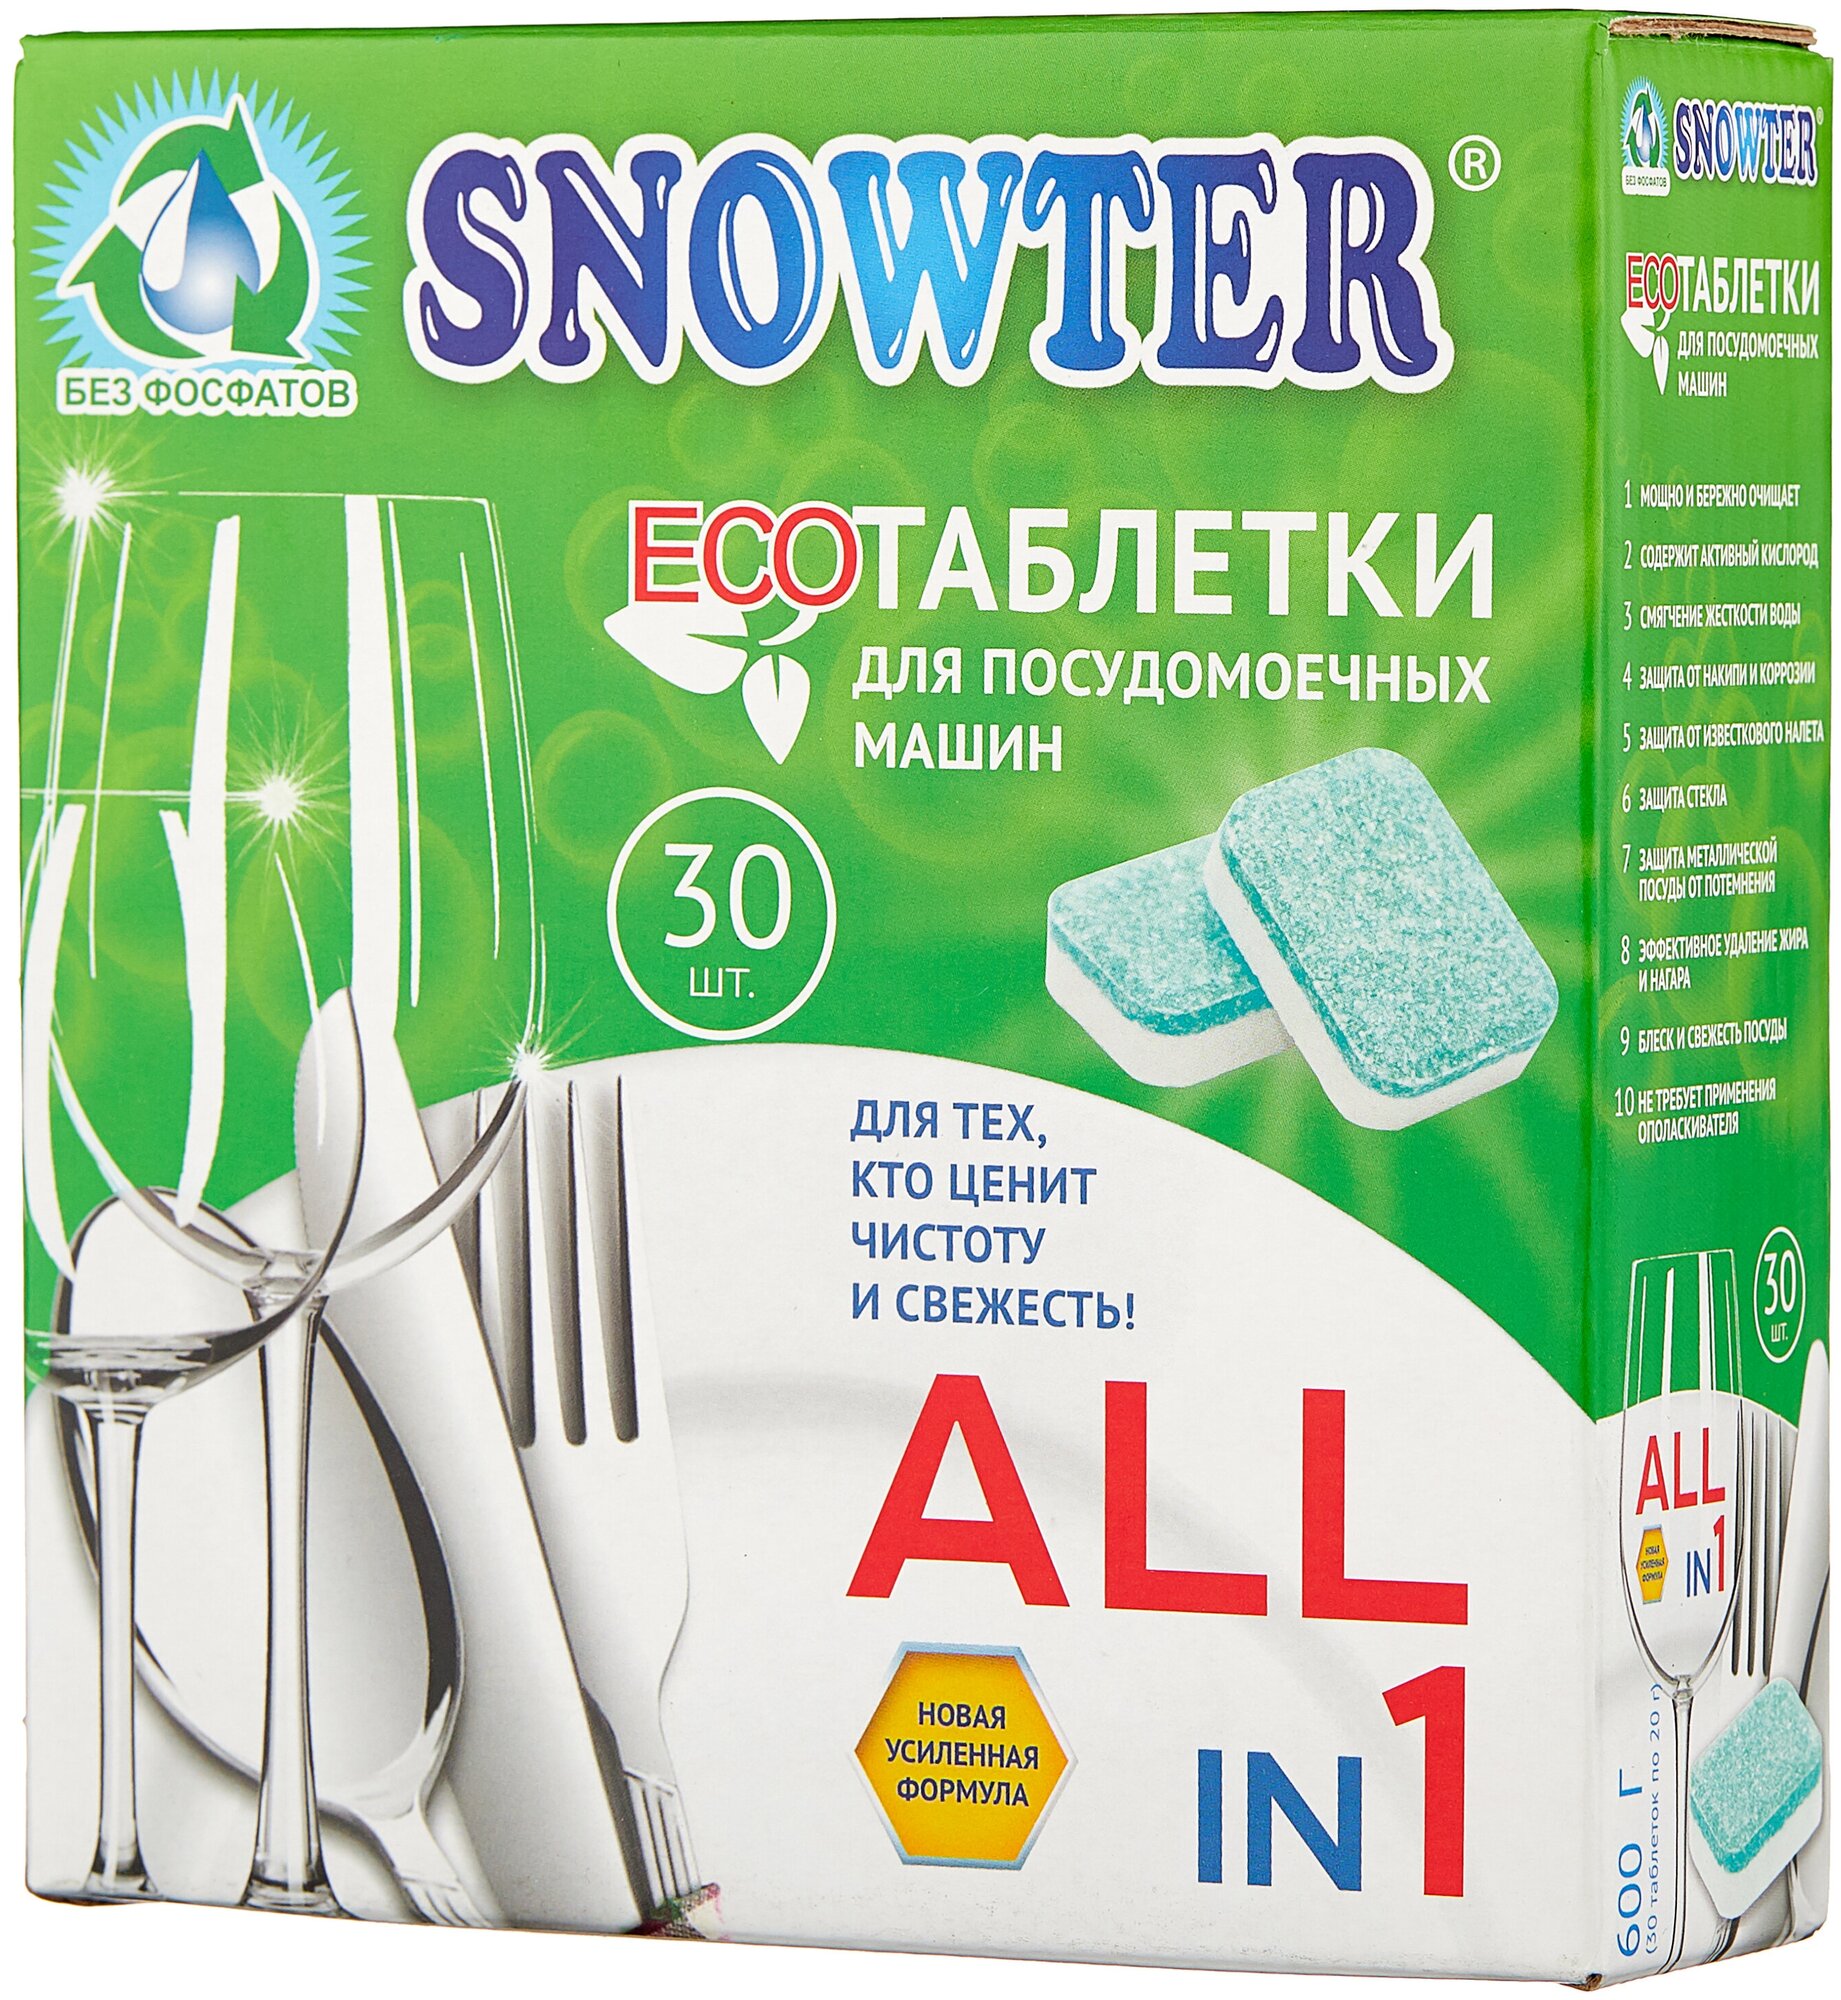 Таблетки для посудомоечной машины Snowter Эко таблетки, 30 шт., 0.02 кг - фотография № 1